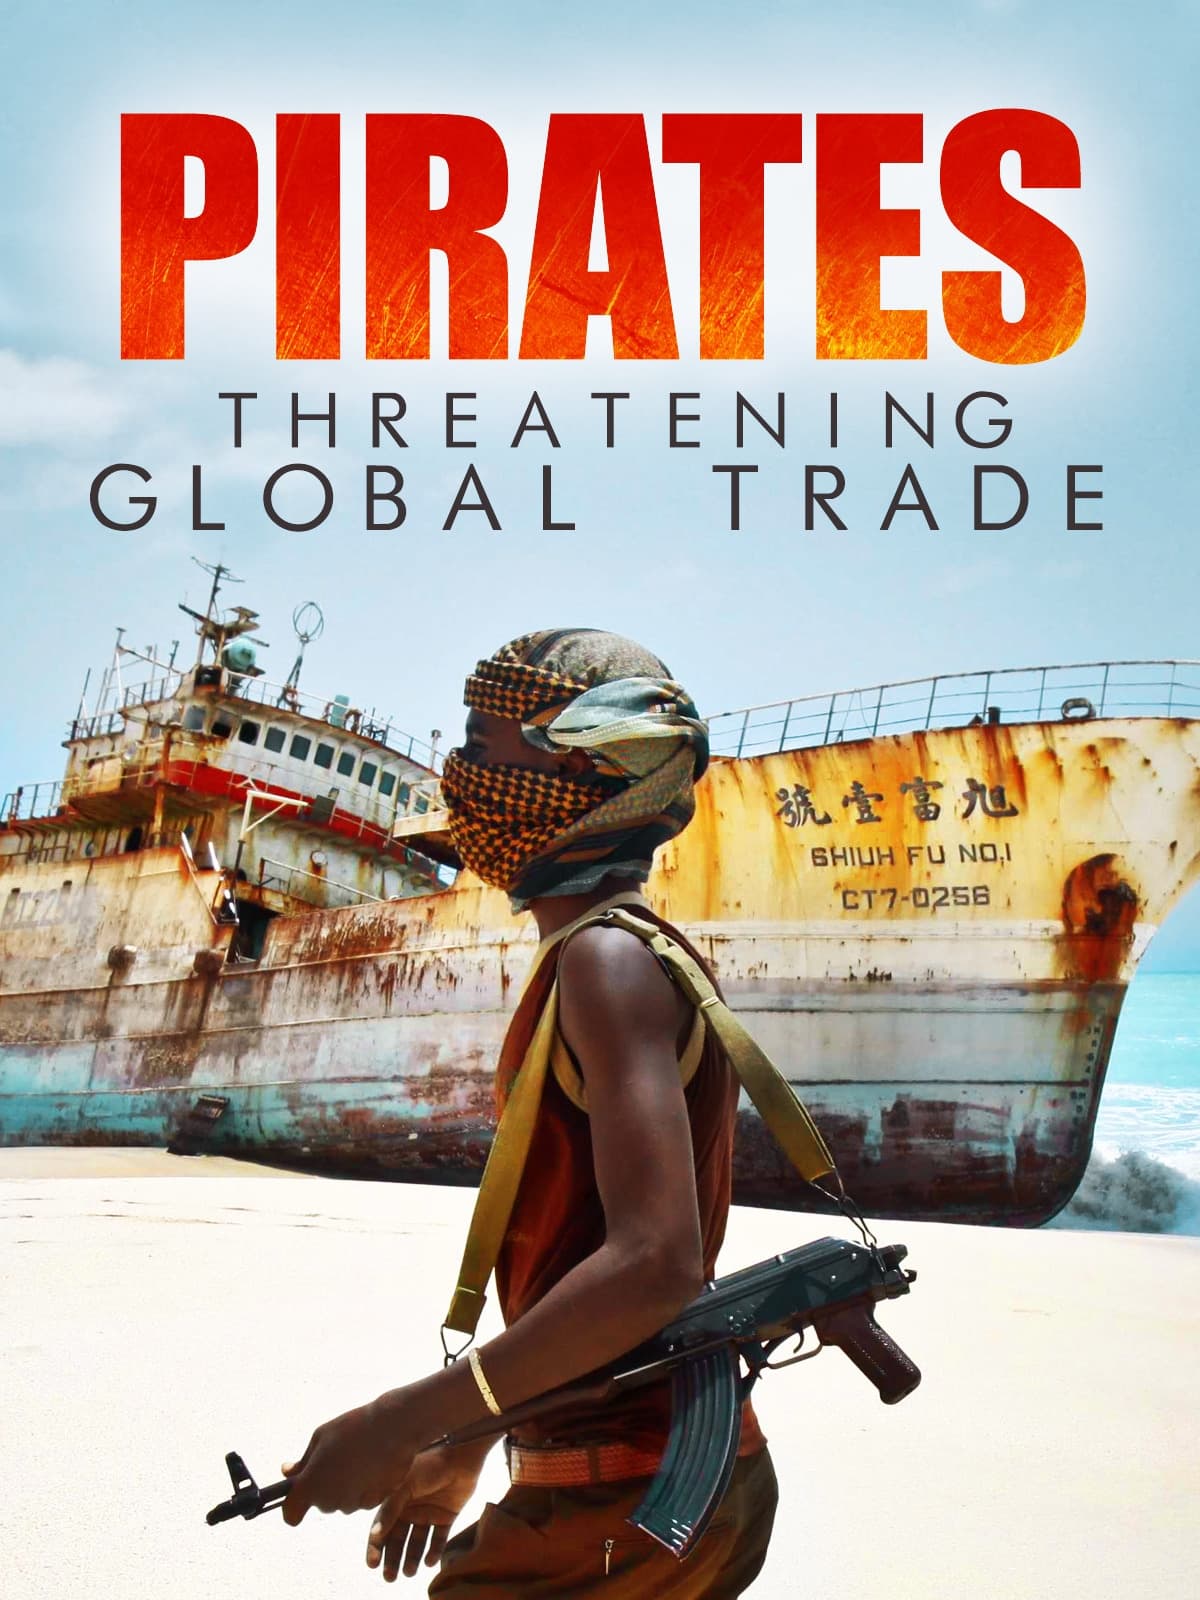 Pirates : menaces sur le commerce mondial